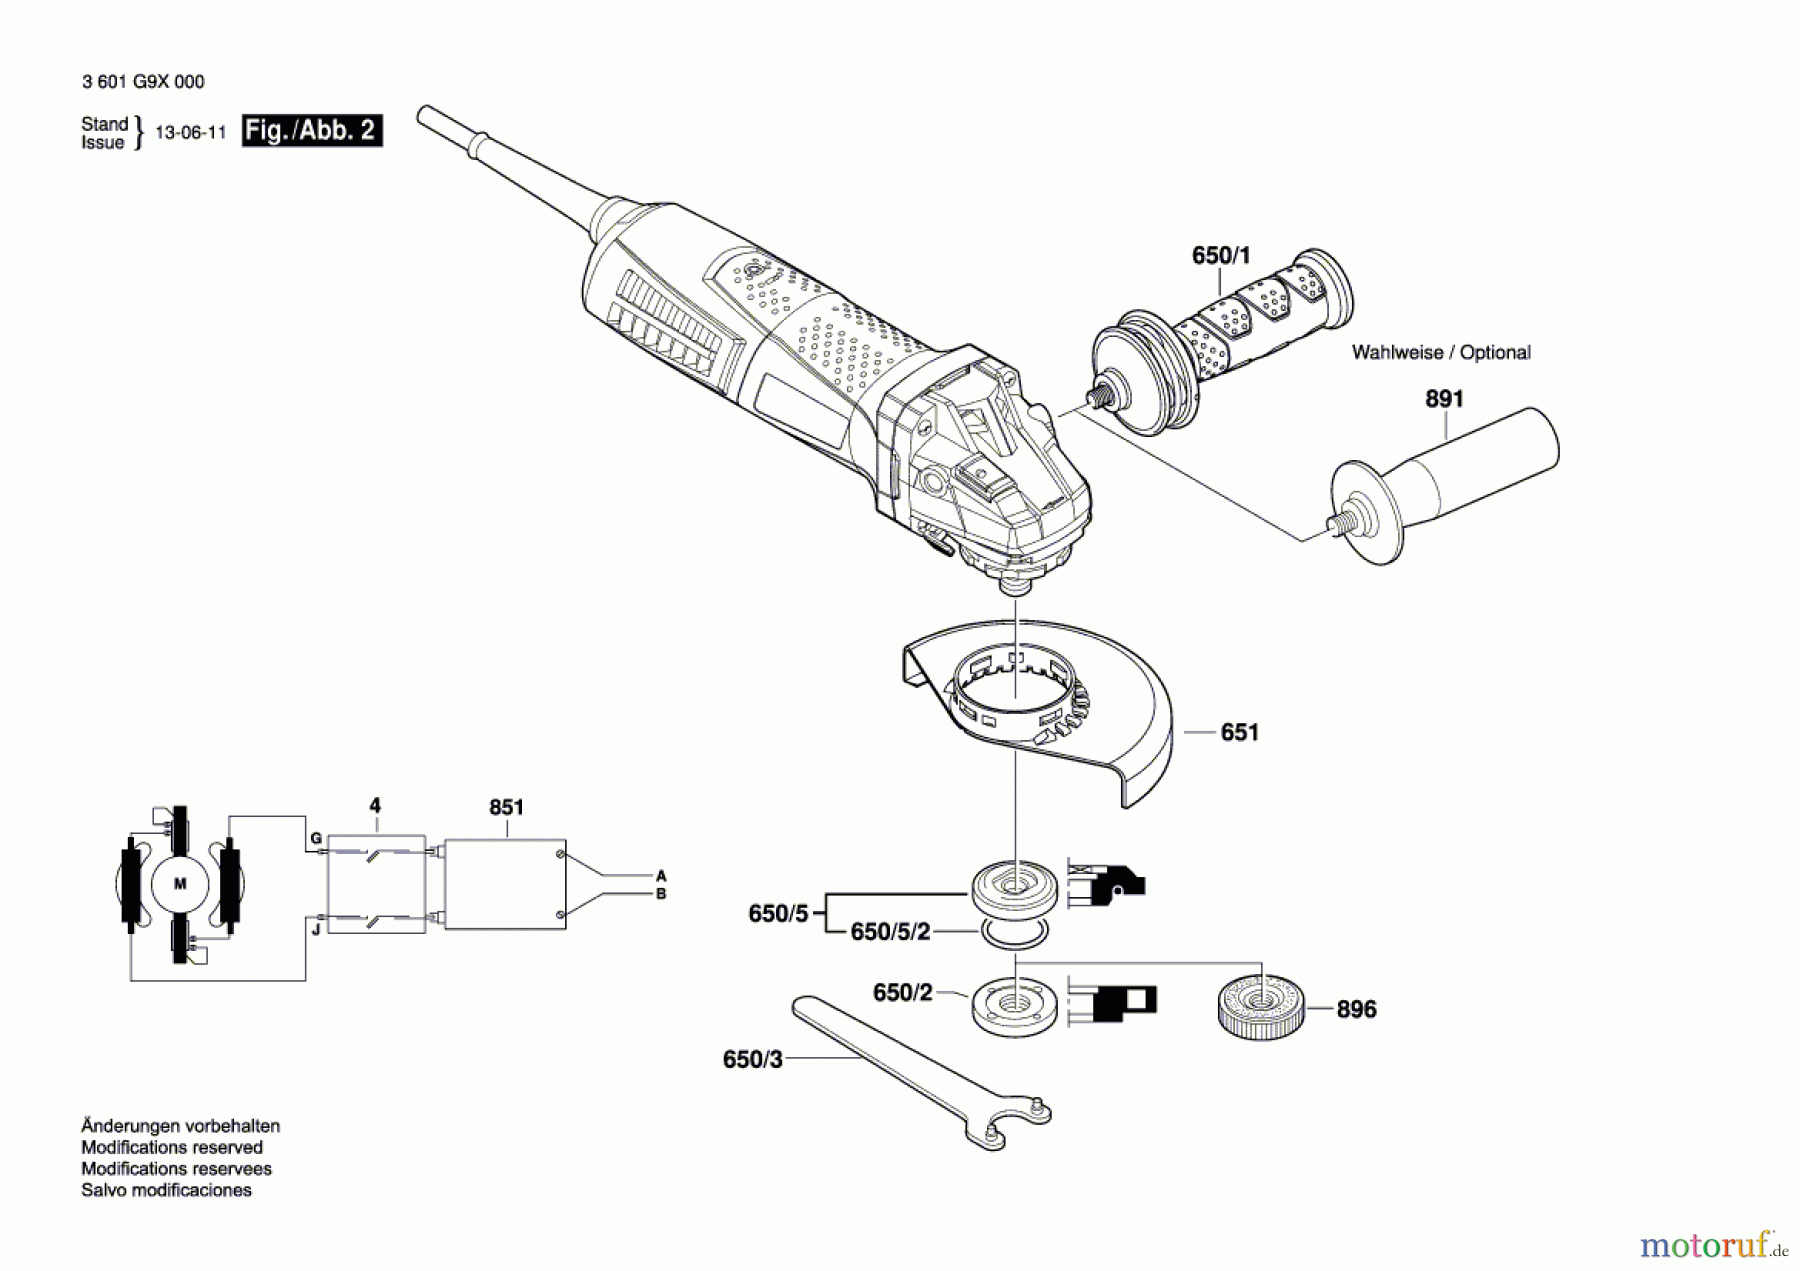  Bosch Werkzeug Winkelschleifer GWS 15-125 Inox Seite 2